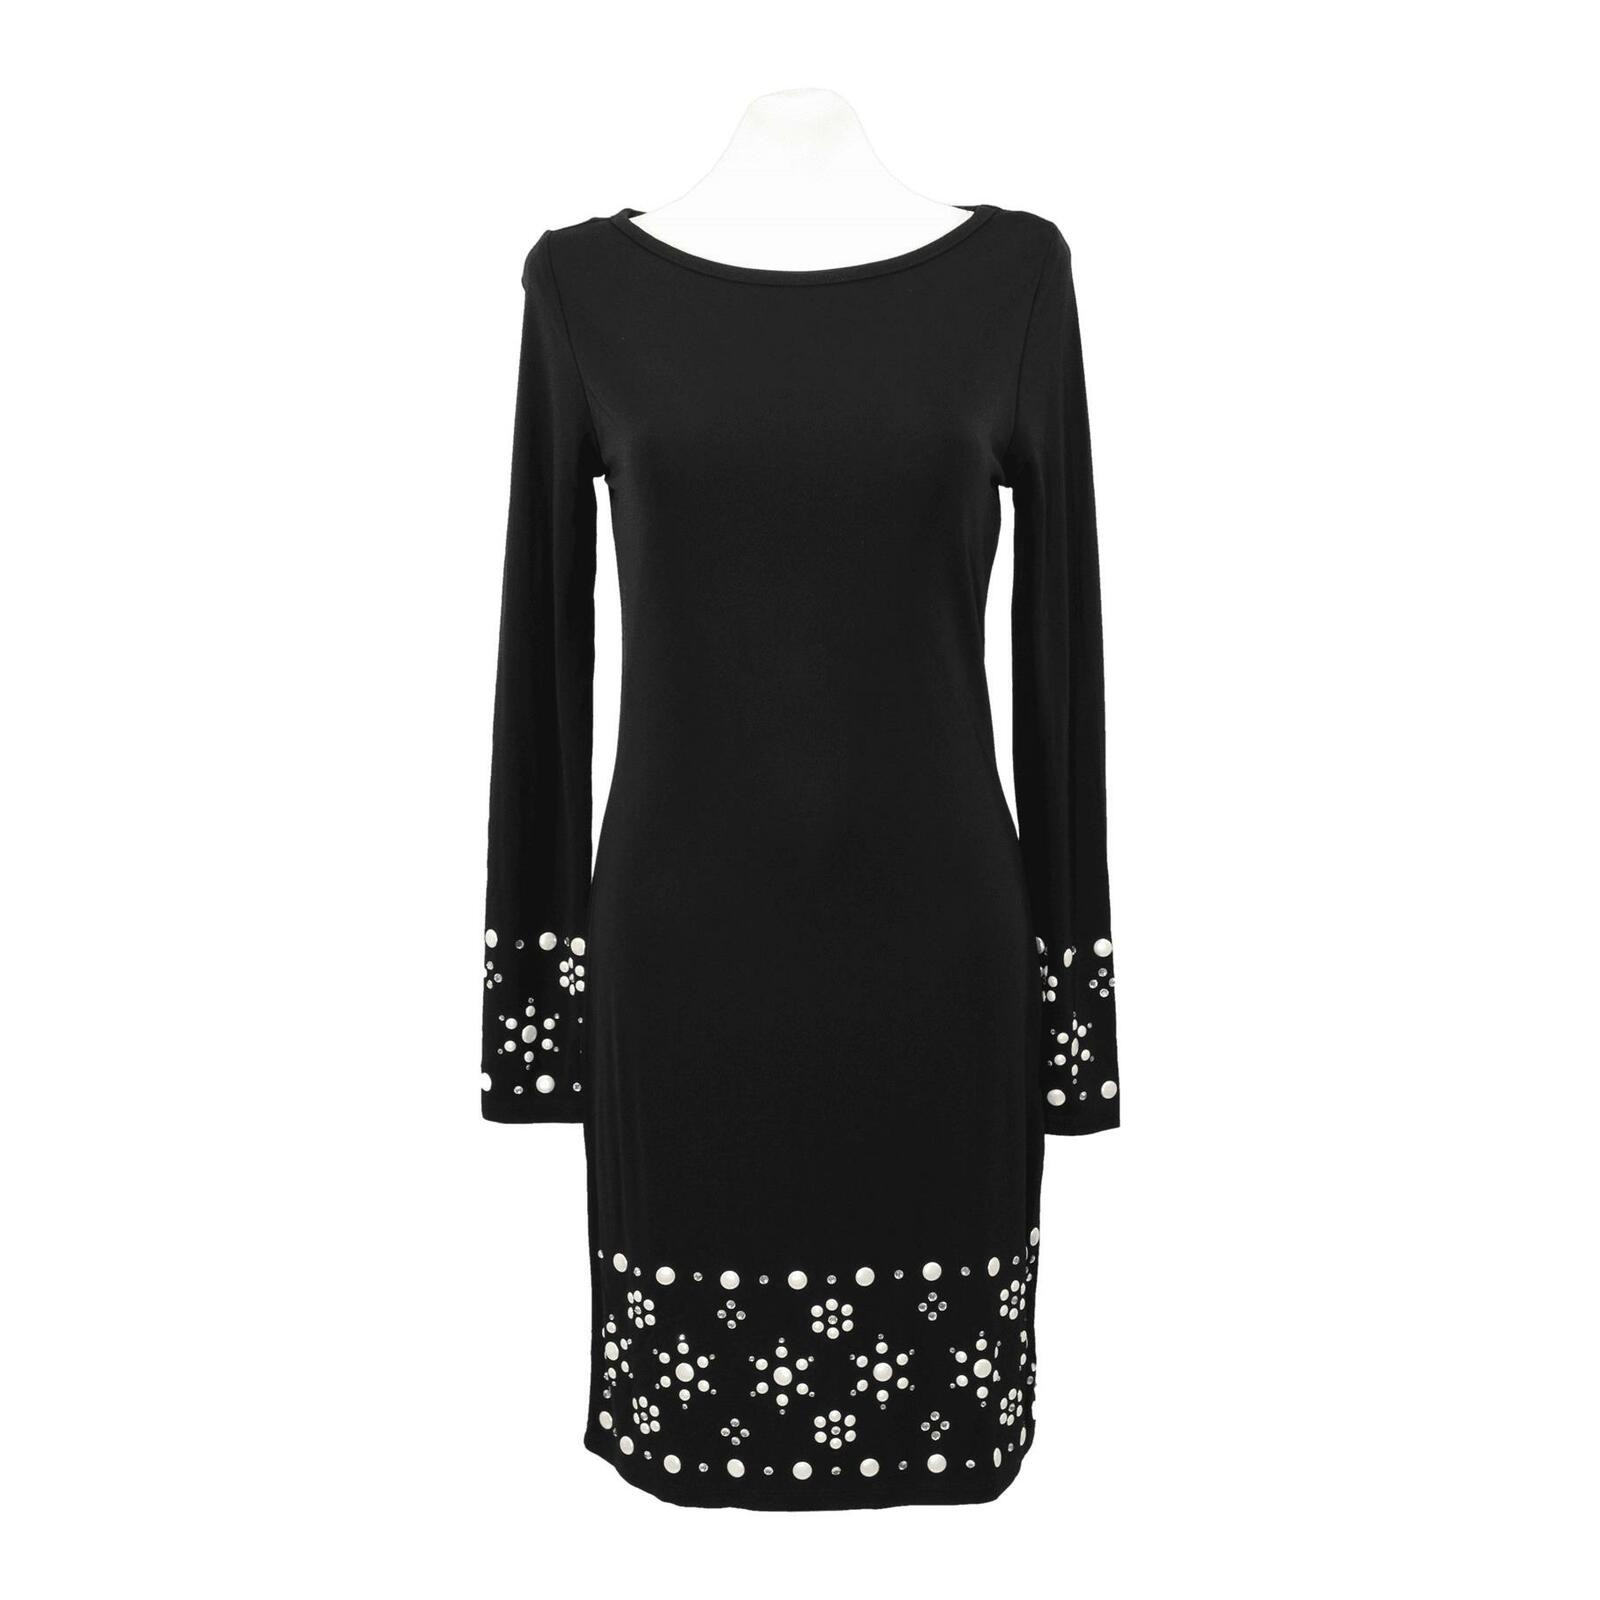 MICHAEL KORS Women's Kleid in Schwarz Size: DE 34